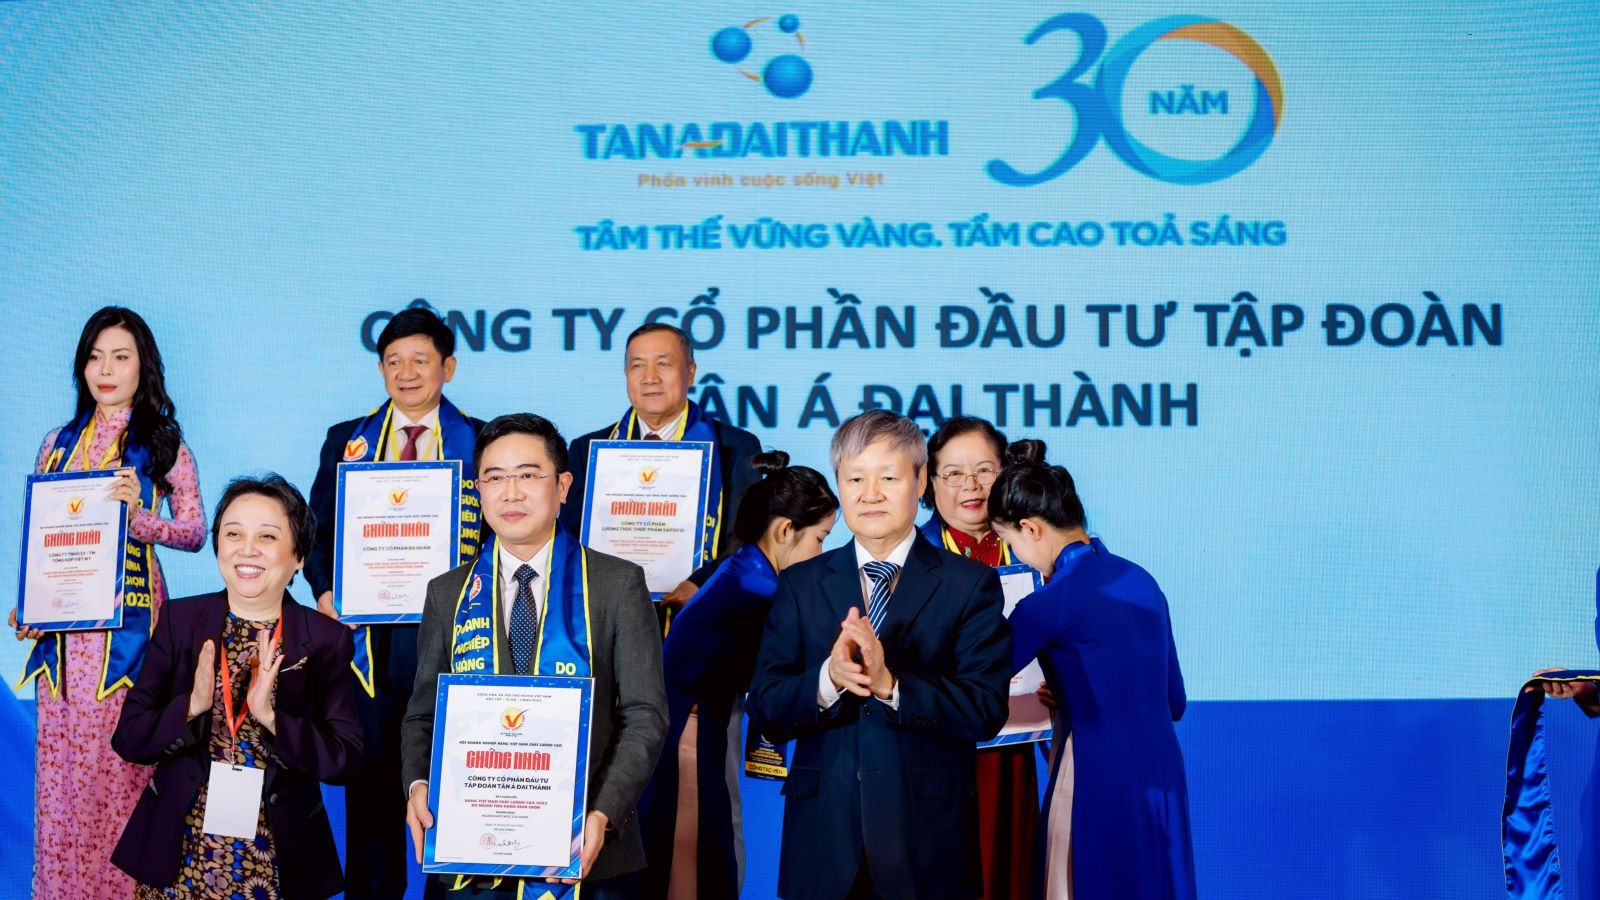 Tân Á Đại Thành: Gần 20 năm liên tiếp được tôn vinh “Hàng Việt Nam chất lượng cao” - Ảnh 1.